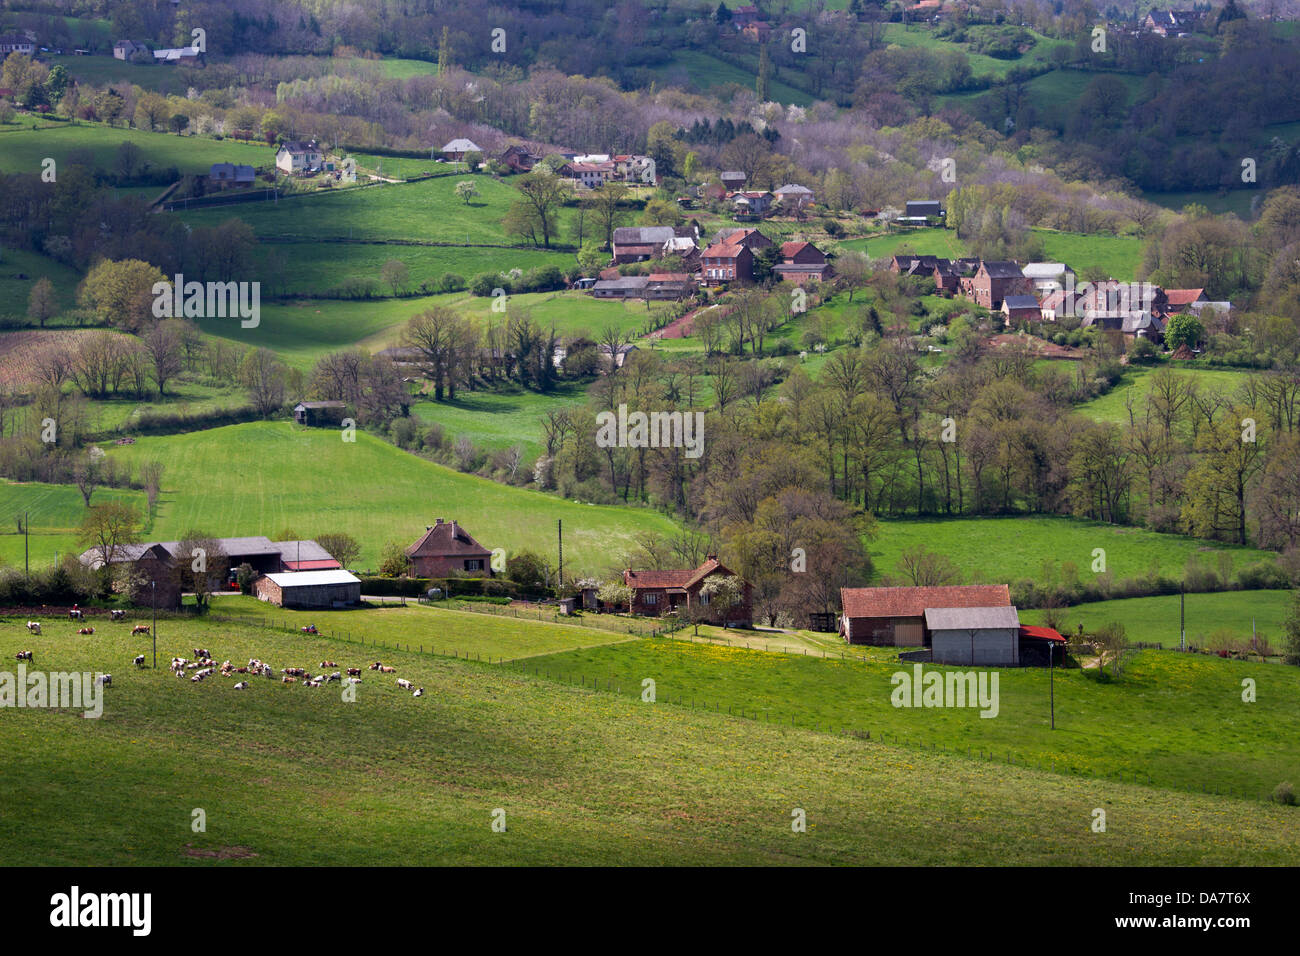 El bucólico paisaje con colinas de pastos, casas de piedra, y vacas que pastan en la región Midi-Pyrénées de Francia Foto de stock